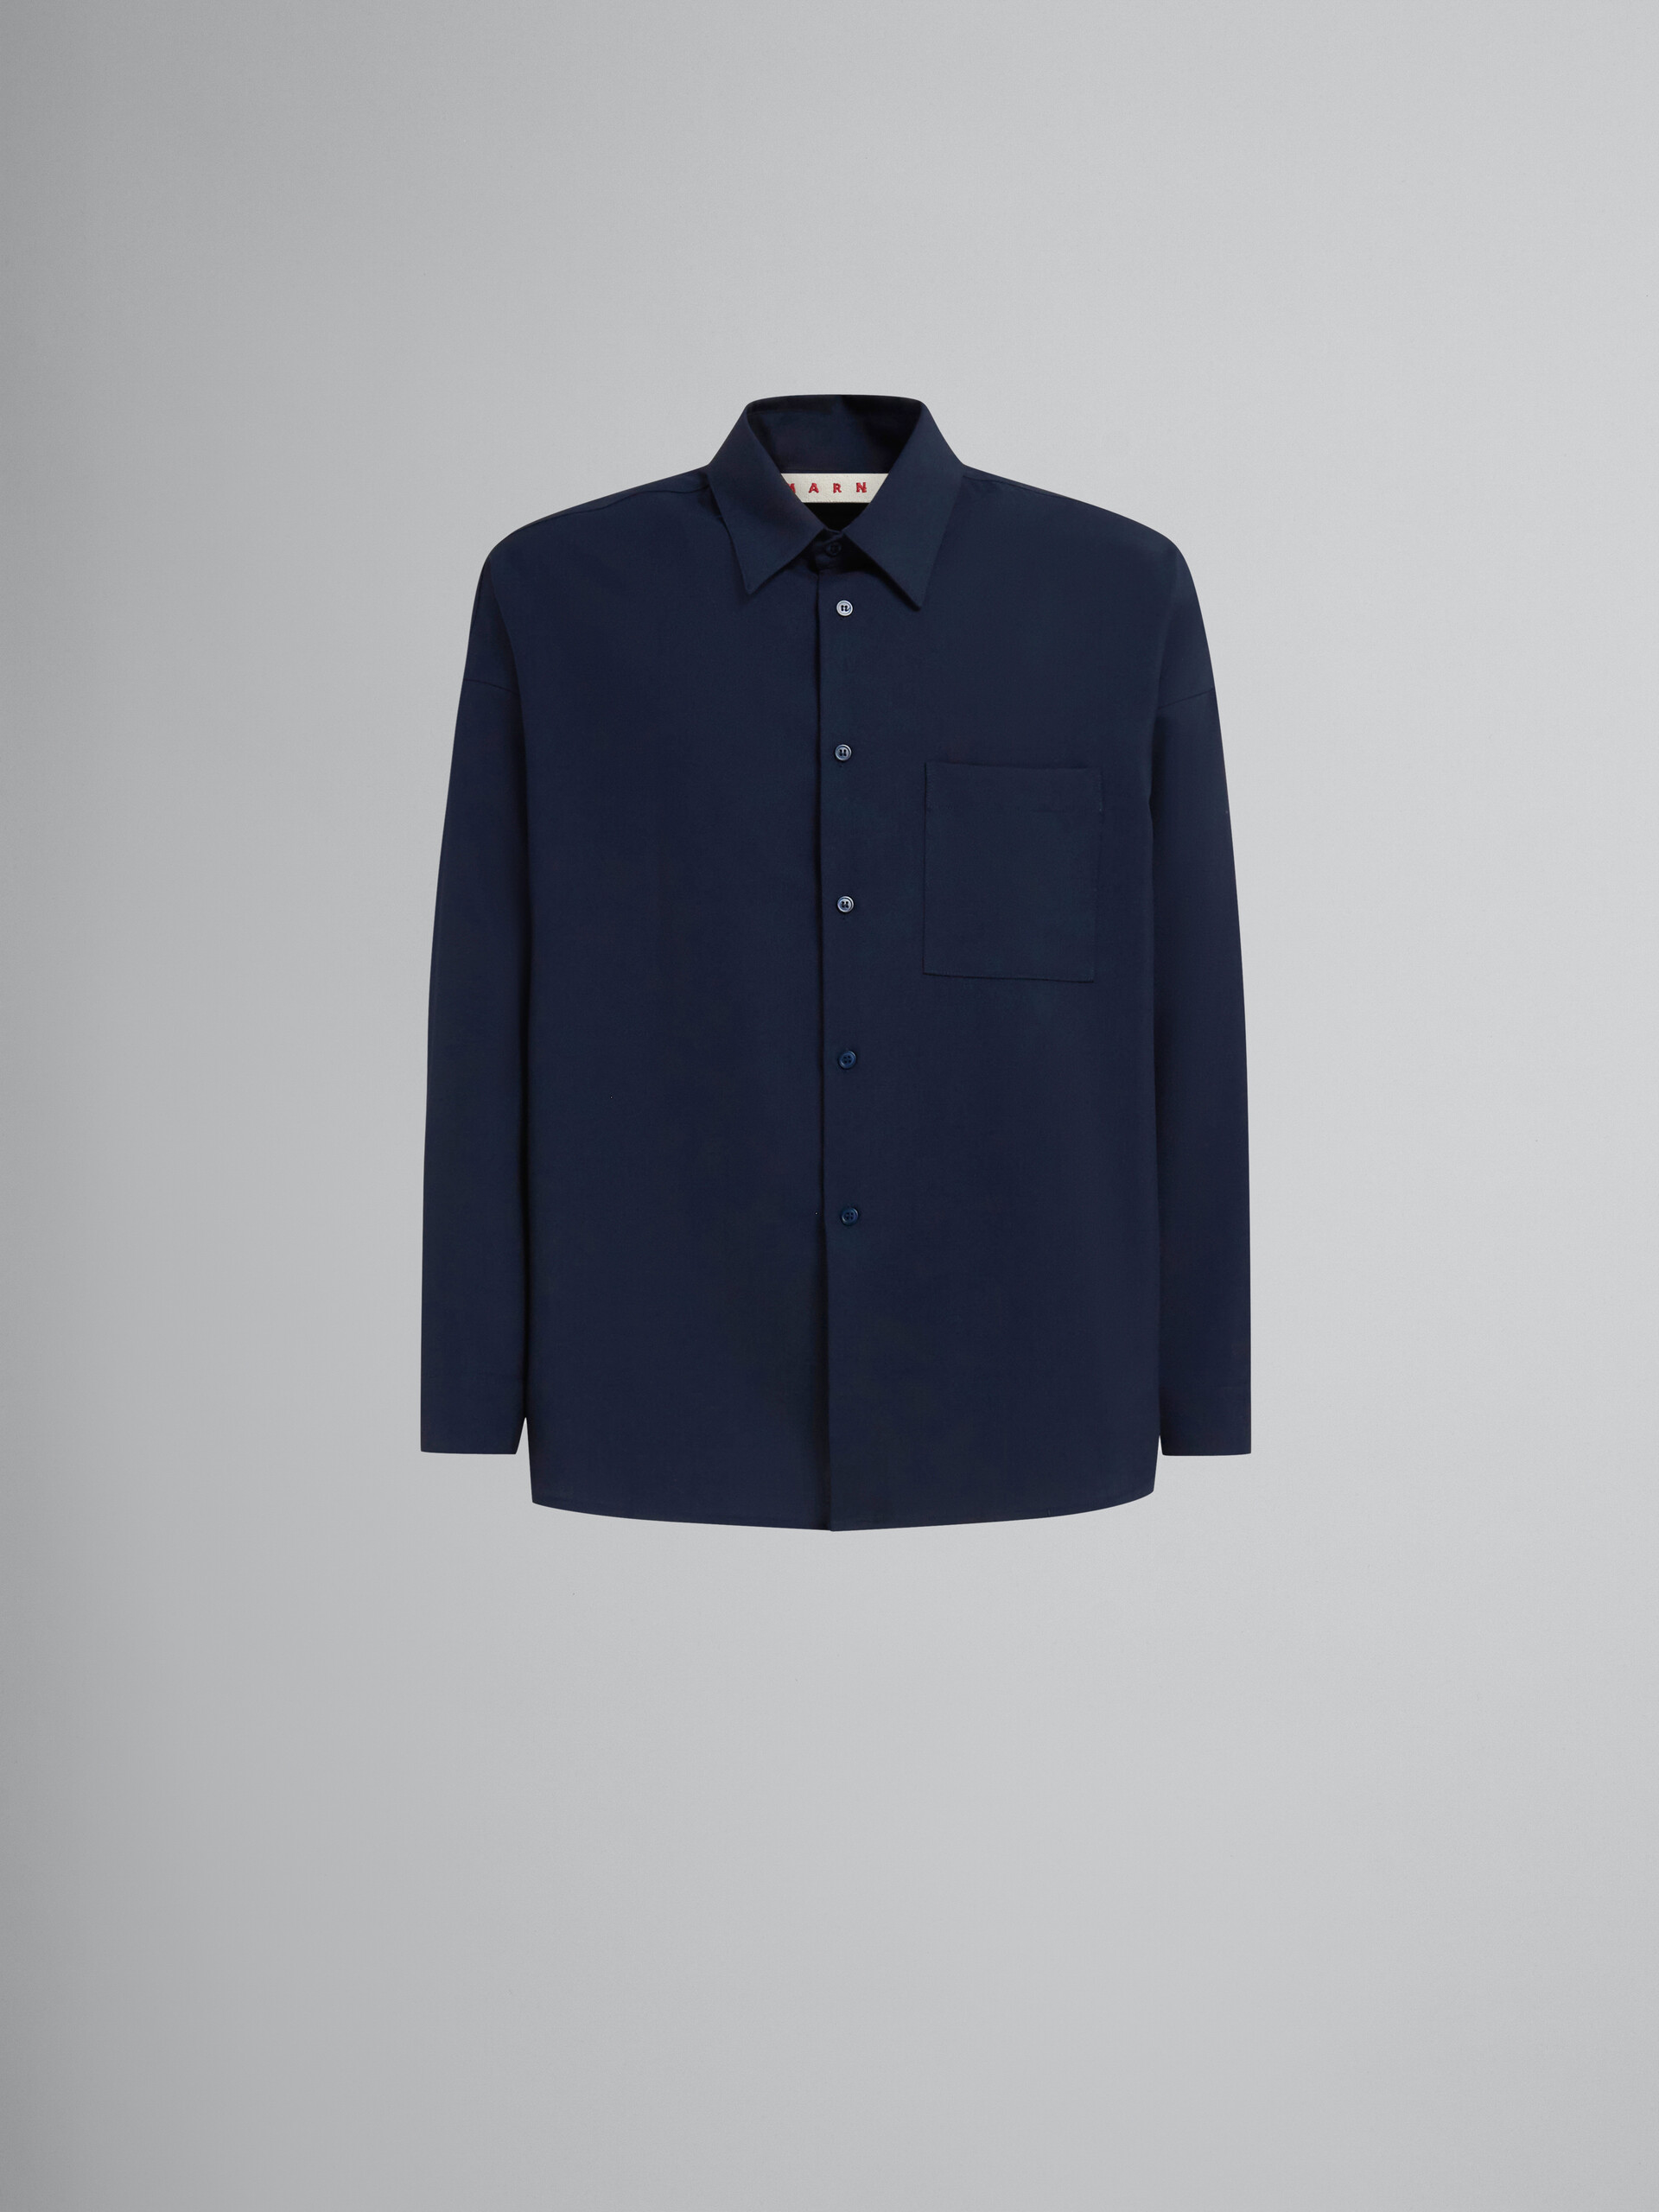 Camisa de lana tropical azul intenso con manga larga - Camisas - Image 1